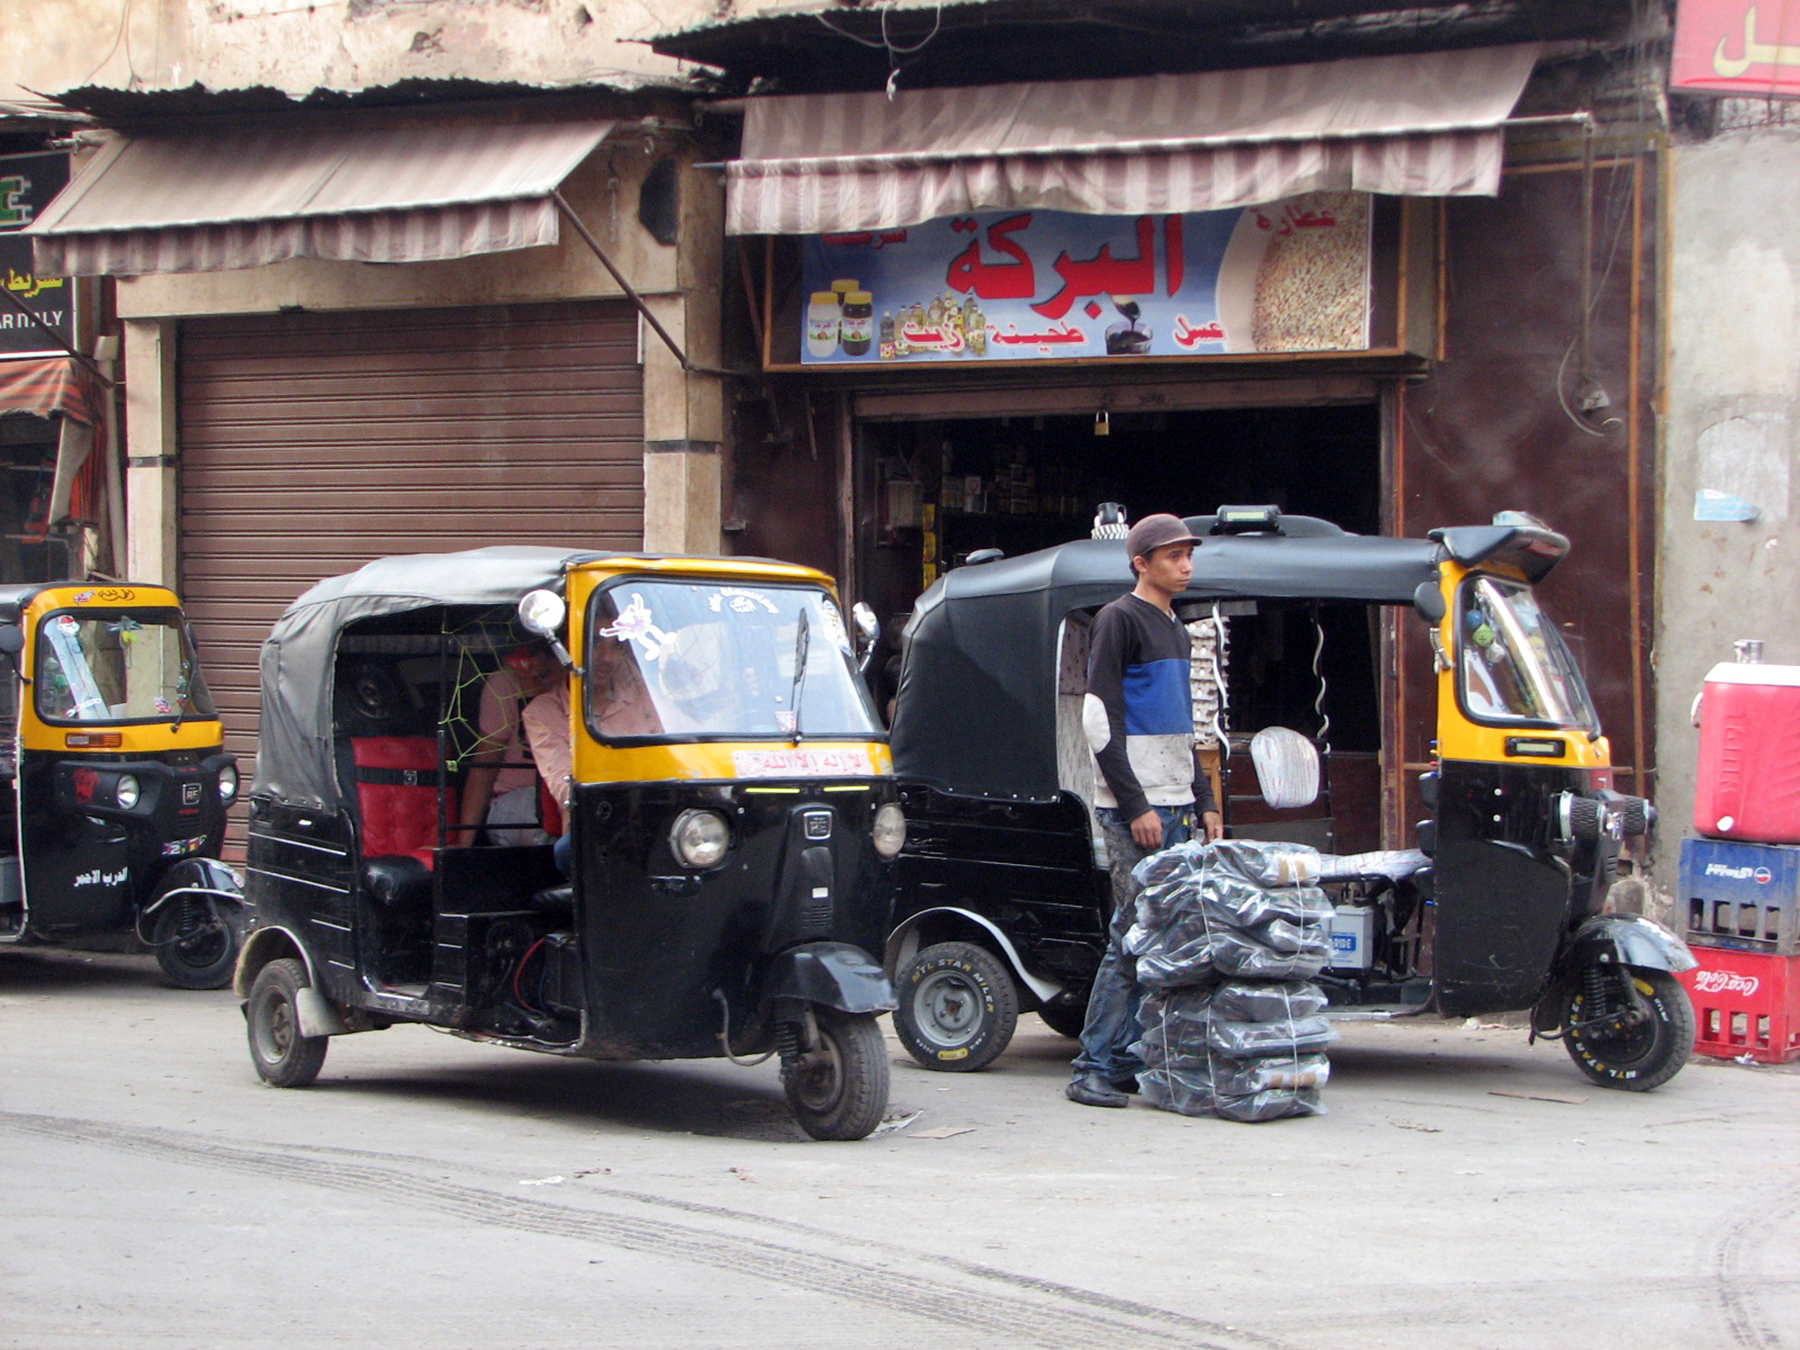 Mit Tuktuks werden nicht nur bis zu vier Passagiere sondern auch Waren transportiert